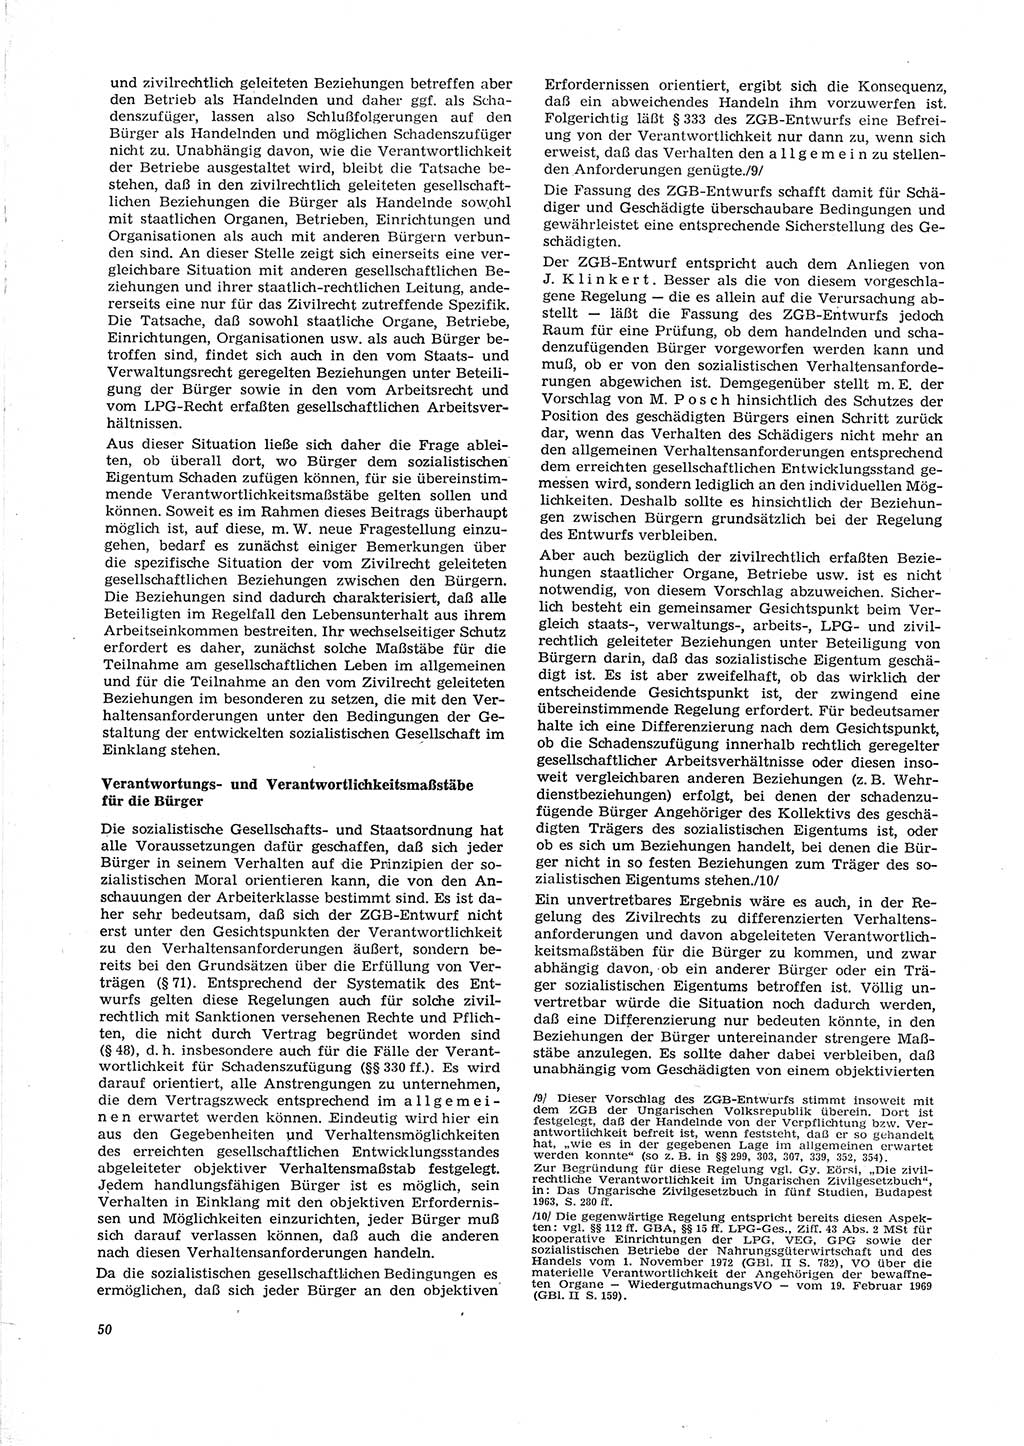 Neue Justiz (NJ), Zeitschrift für Recht und Rechtswissenschaft [Deutsche Demokratische Republik (DDR)], 29. Jahrgang 1975, Seite 50 (NJ DDR 1975, S. 50)